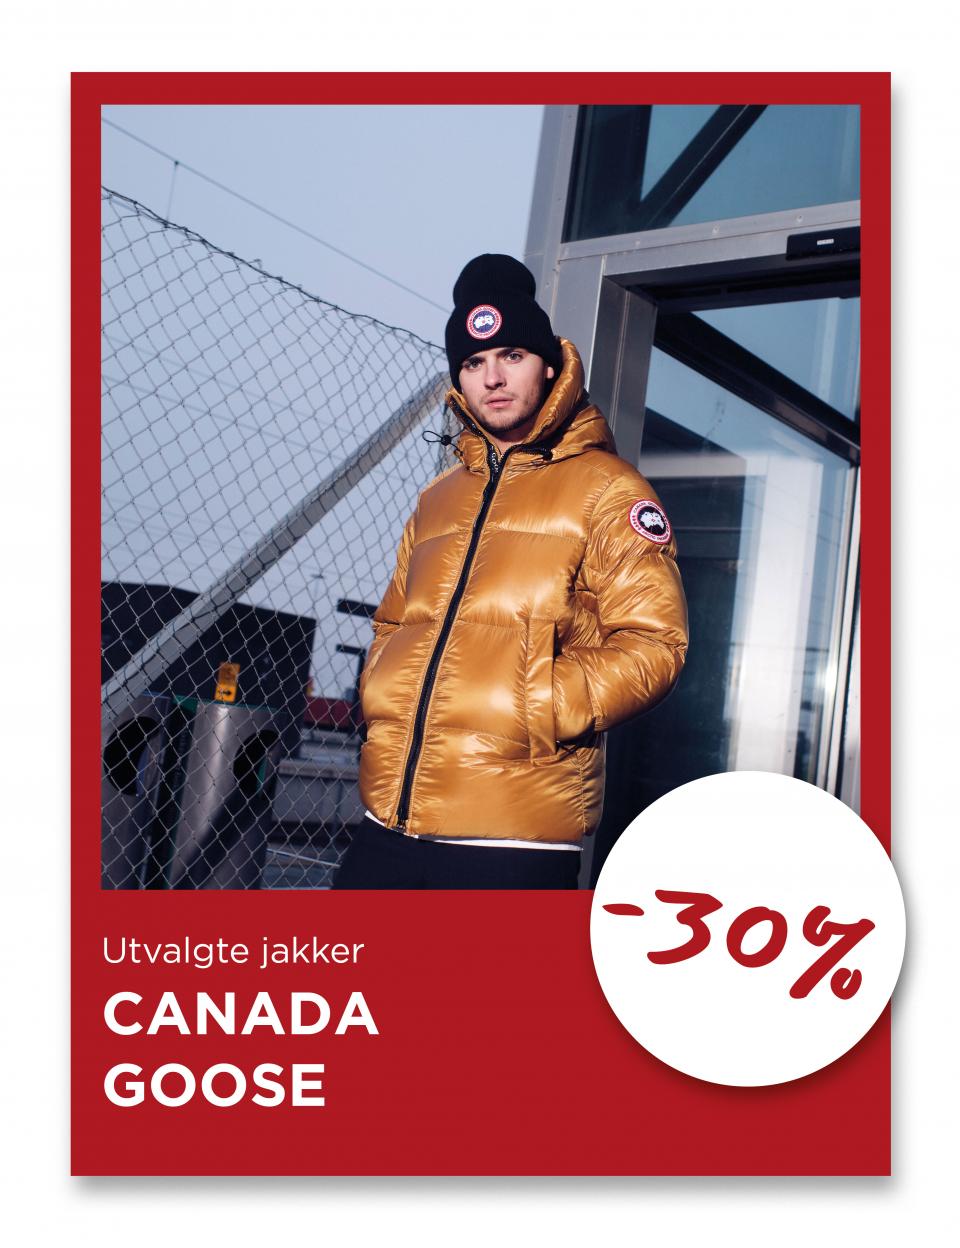 Utvalgte jakker fra Canada Goose, -30%